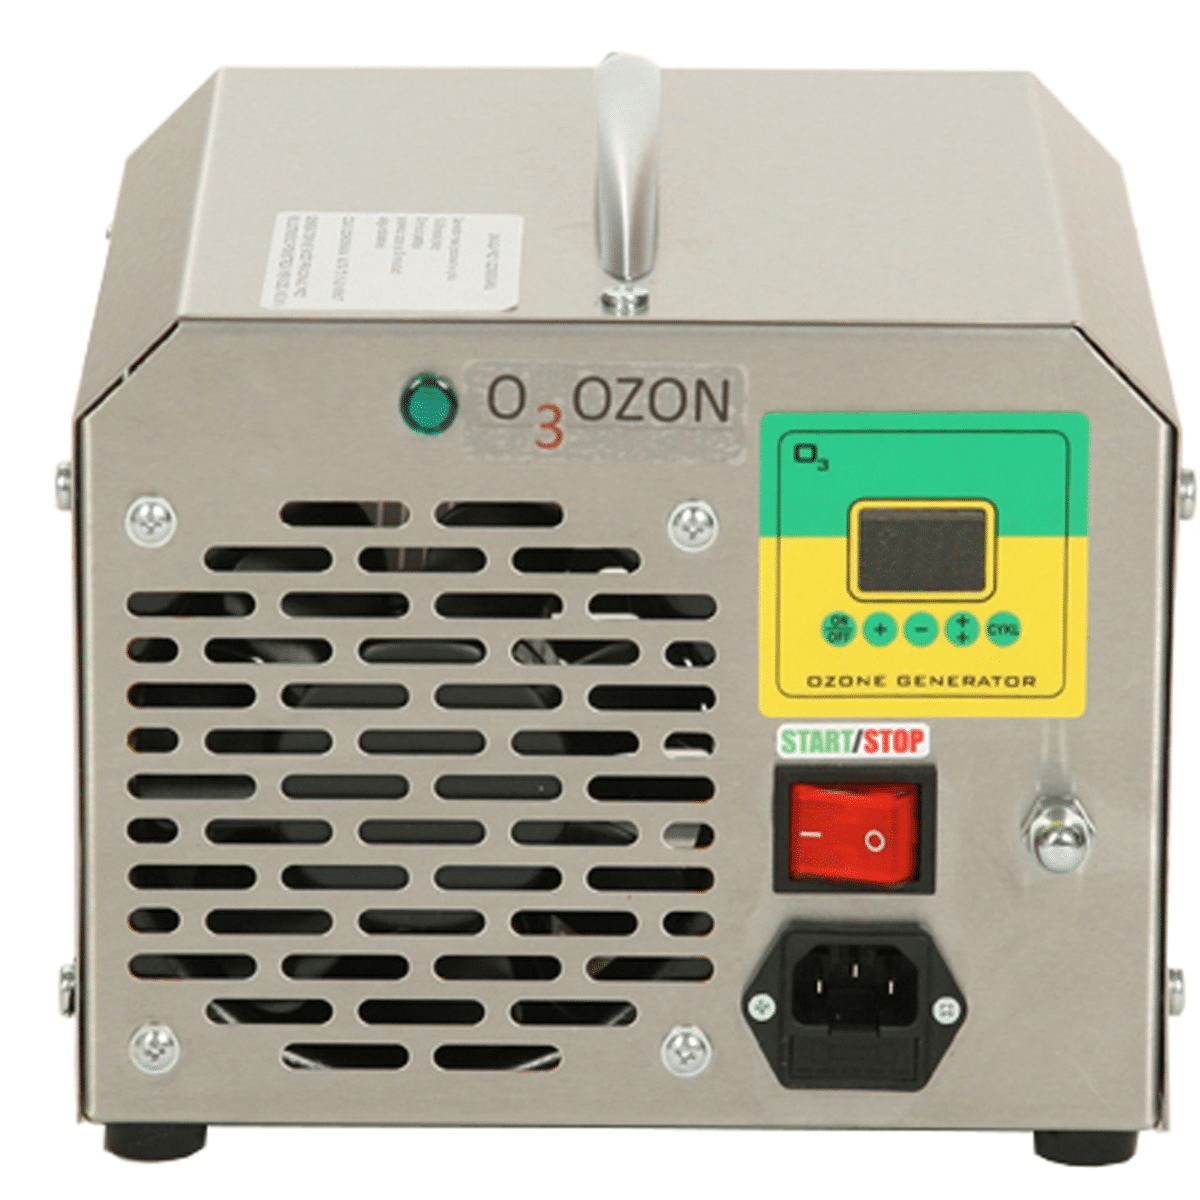 O3OZON Alicja 2 Generator Ozonu do Klimatyzacji